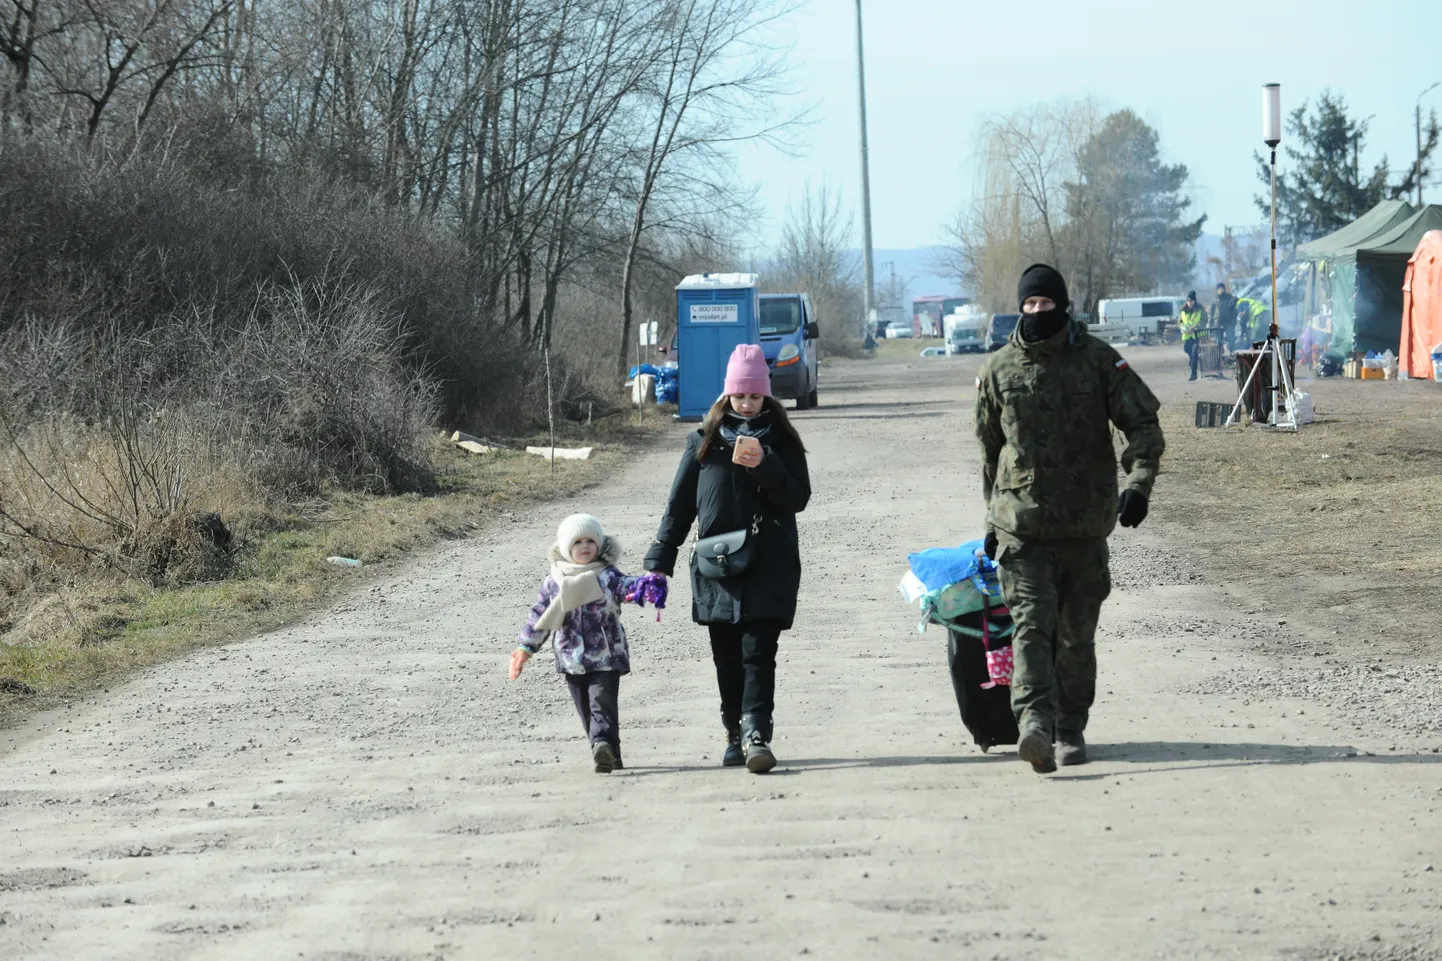 Poola sõdur aitab emal ja lapsel pagasit kanda